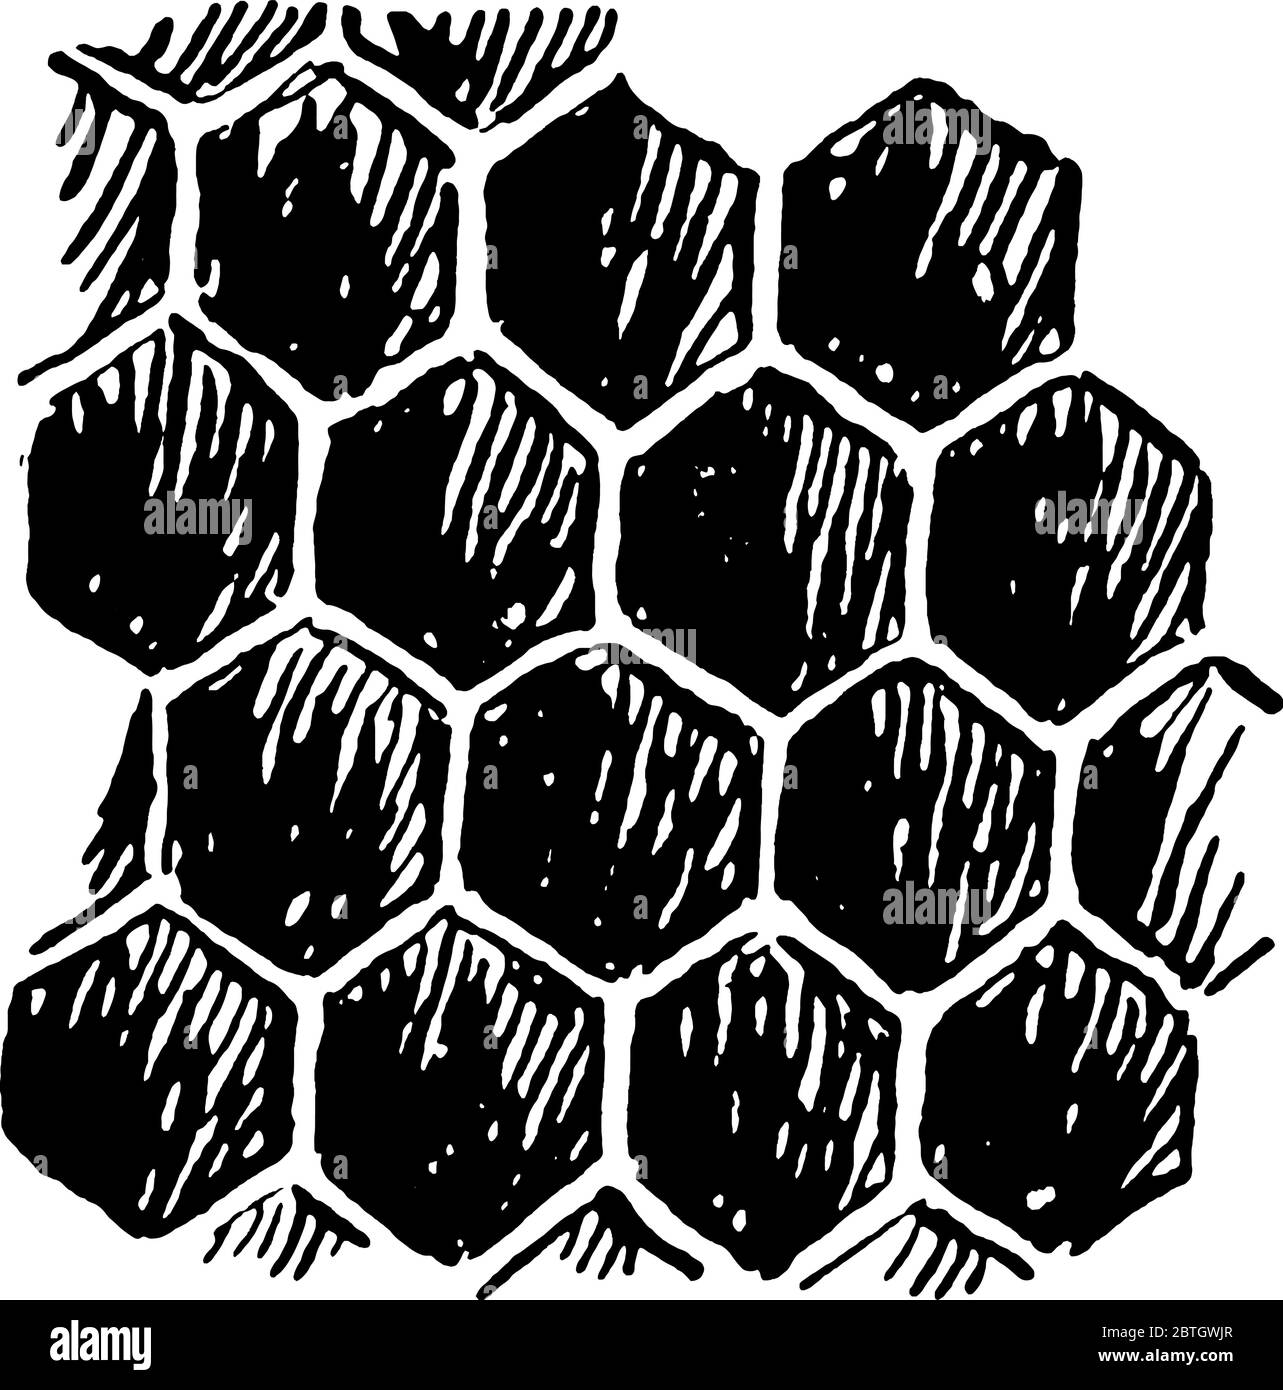 Illustration De La Grille En Métal Doré Avec Des Nids D'abeilles Arrondis  Banque D'Images et Photos Libres De Droits. Image 17967544